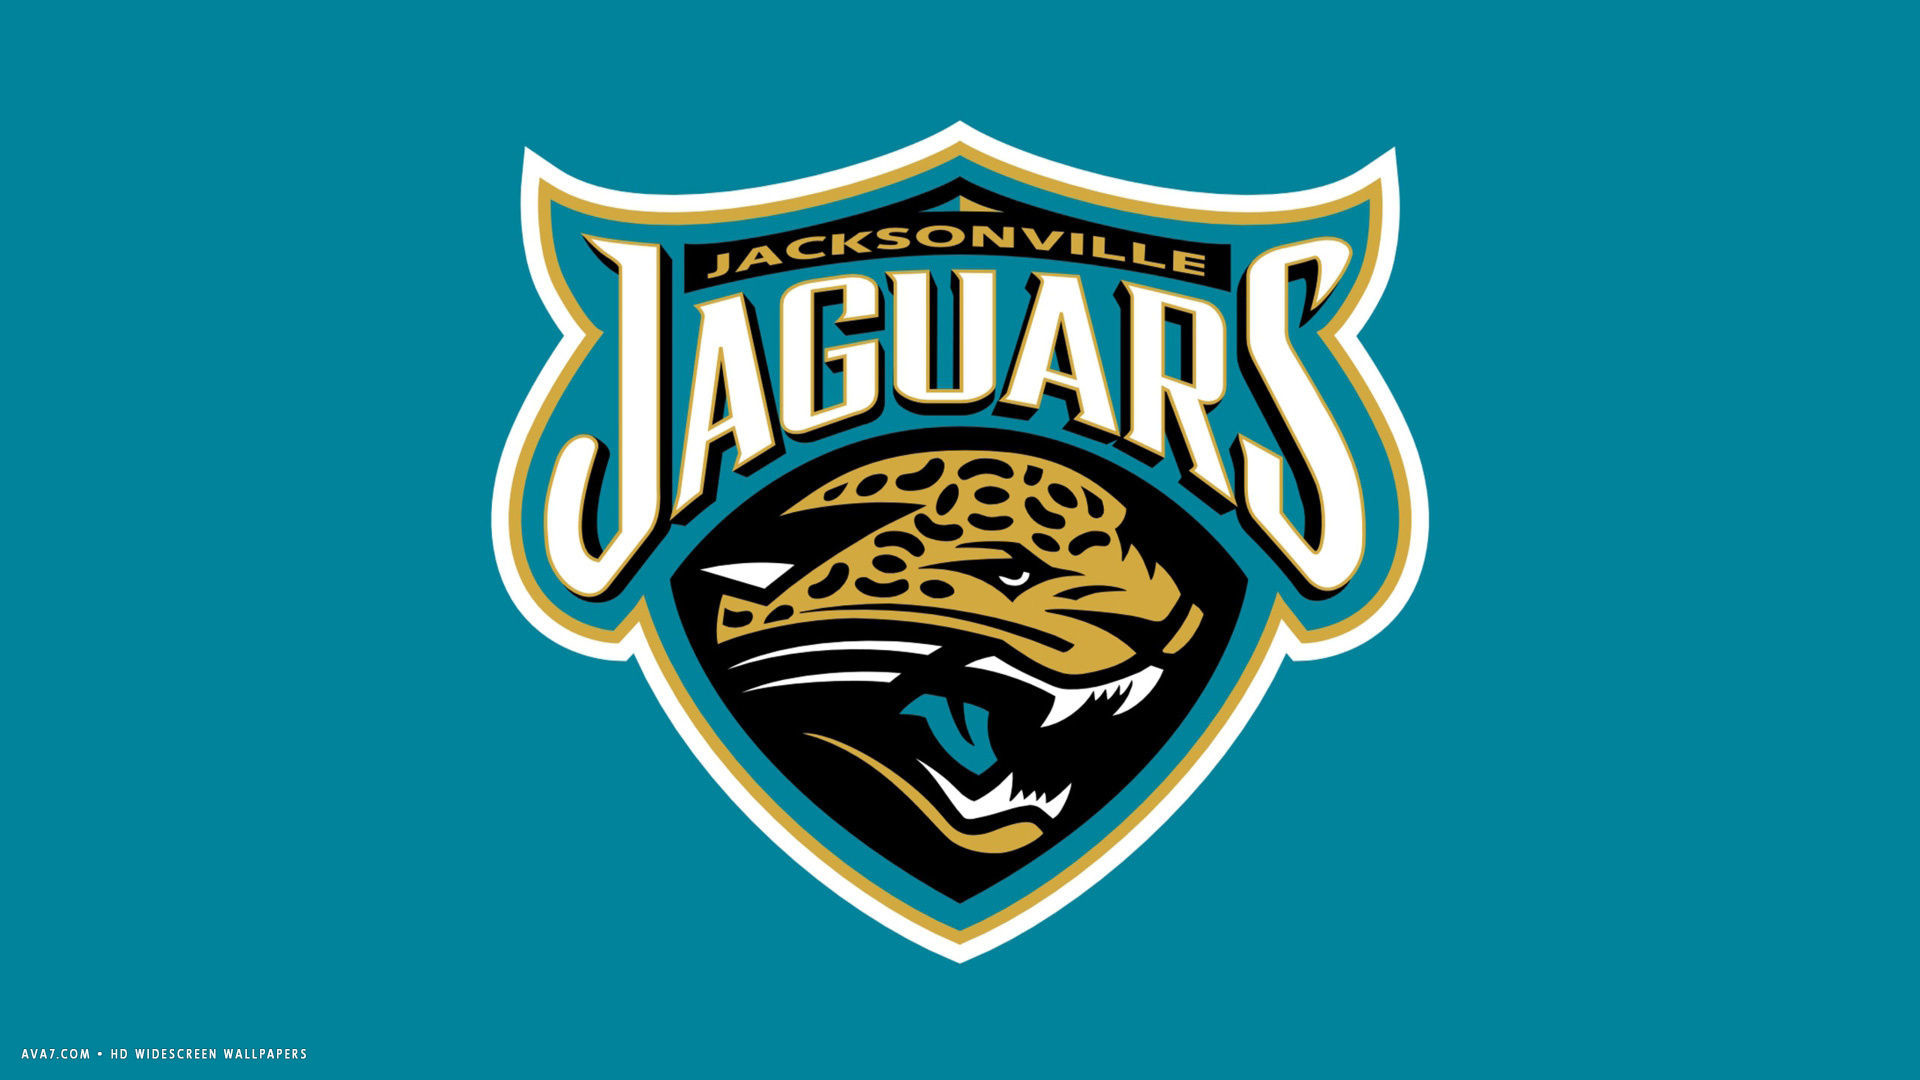 1920x1080 jacksonville jaguars nfl football team hd widescreen wallpaper .